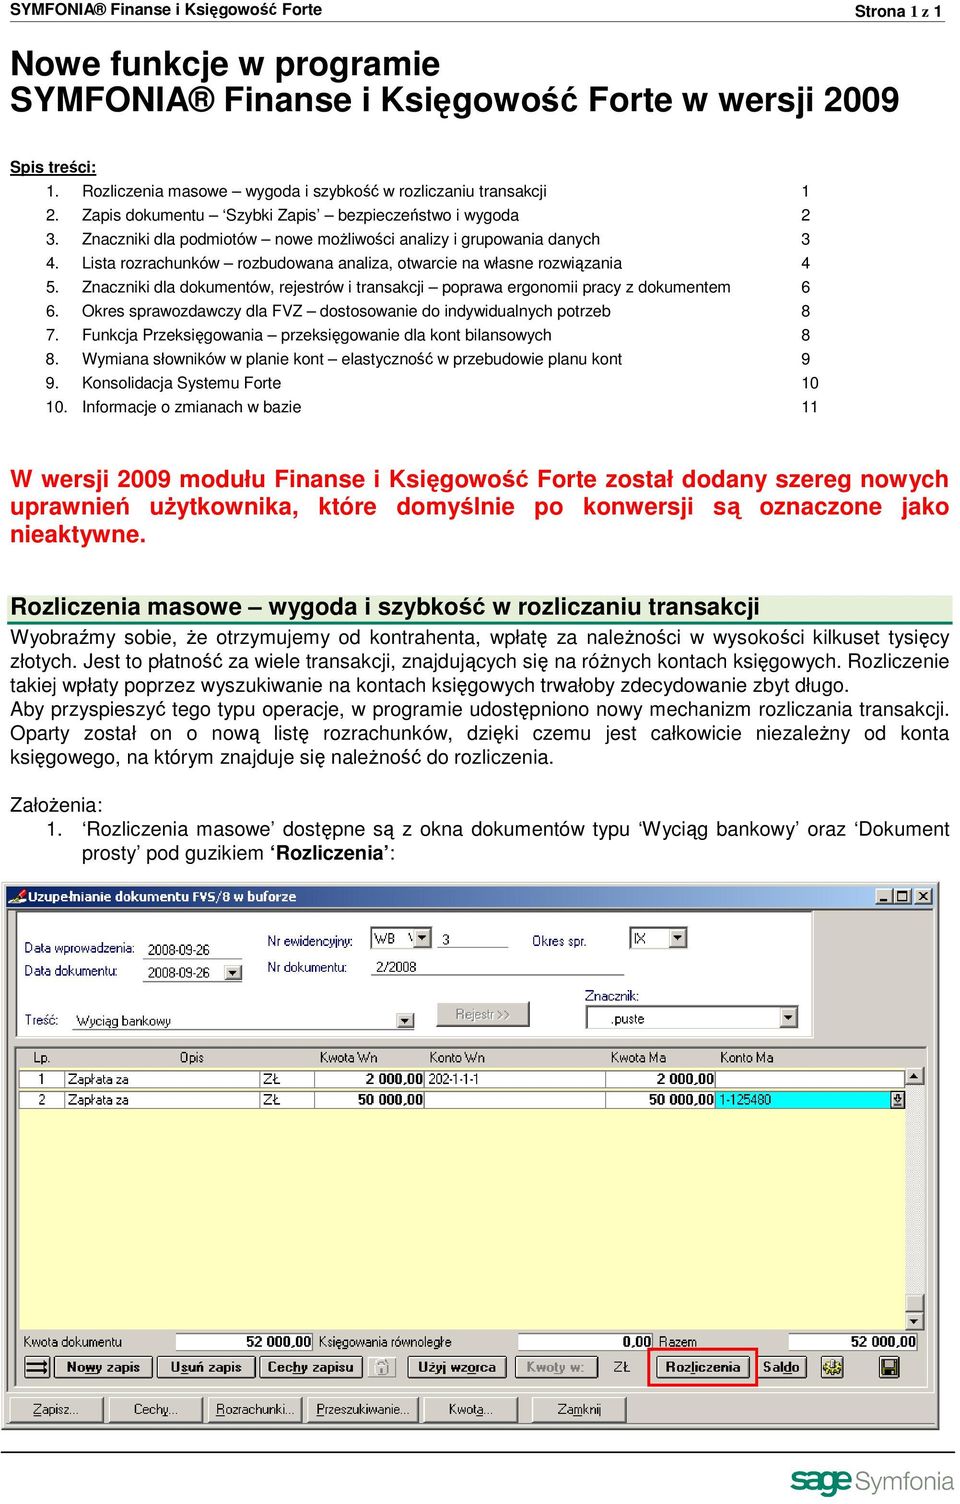 Lista rozrachunków rozbudowana analiza, otwarcie na własne rozwiązania 4 5. Znaczniki dla dokumentów, rejestrów i transakcji poprawa ergonomii pracy z dokumentem 6 6.